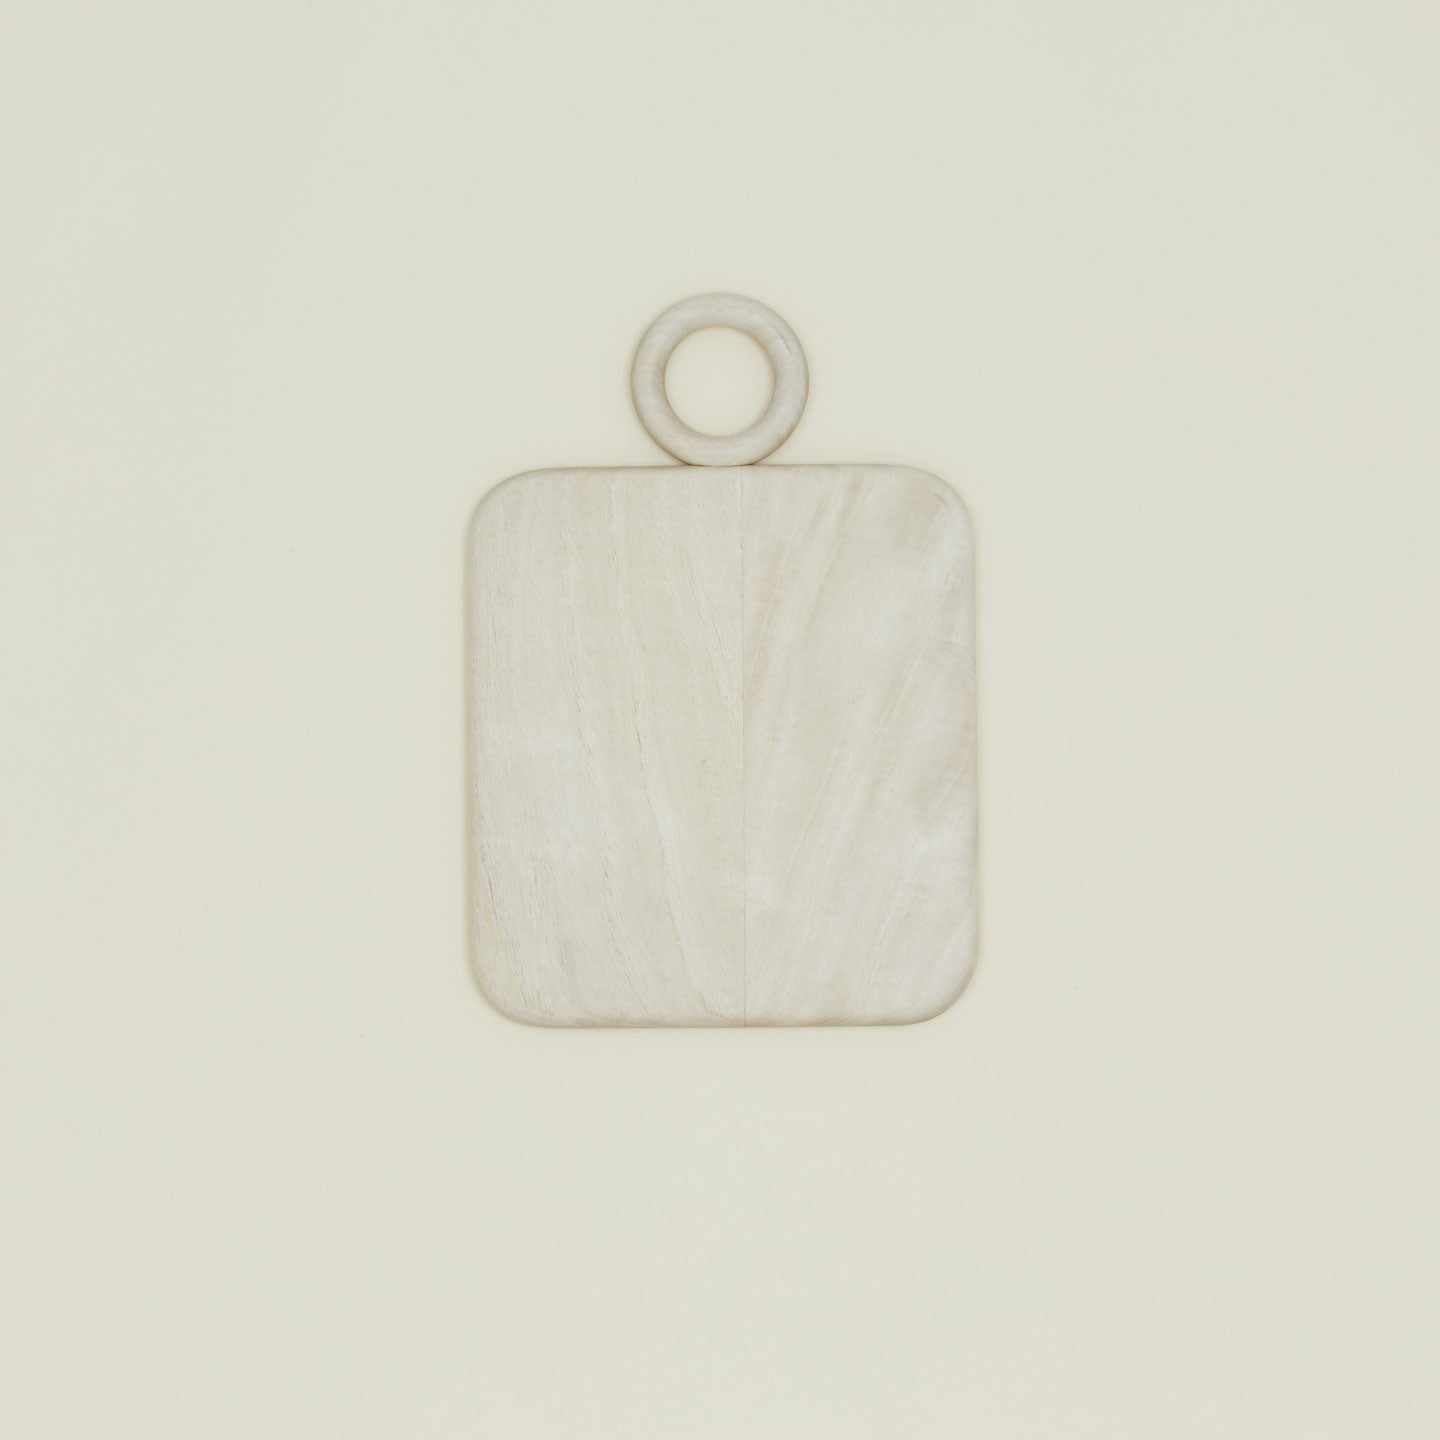 Selva Cutting Board - Blonde Cedar